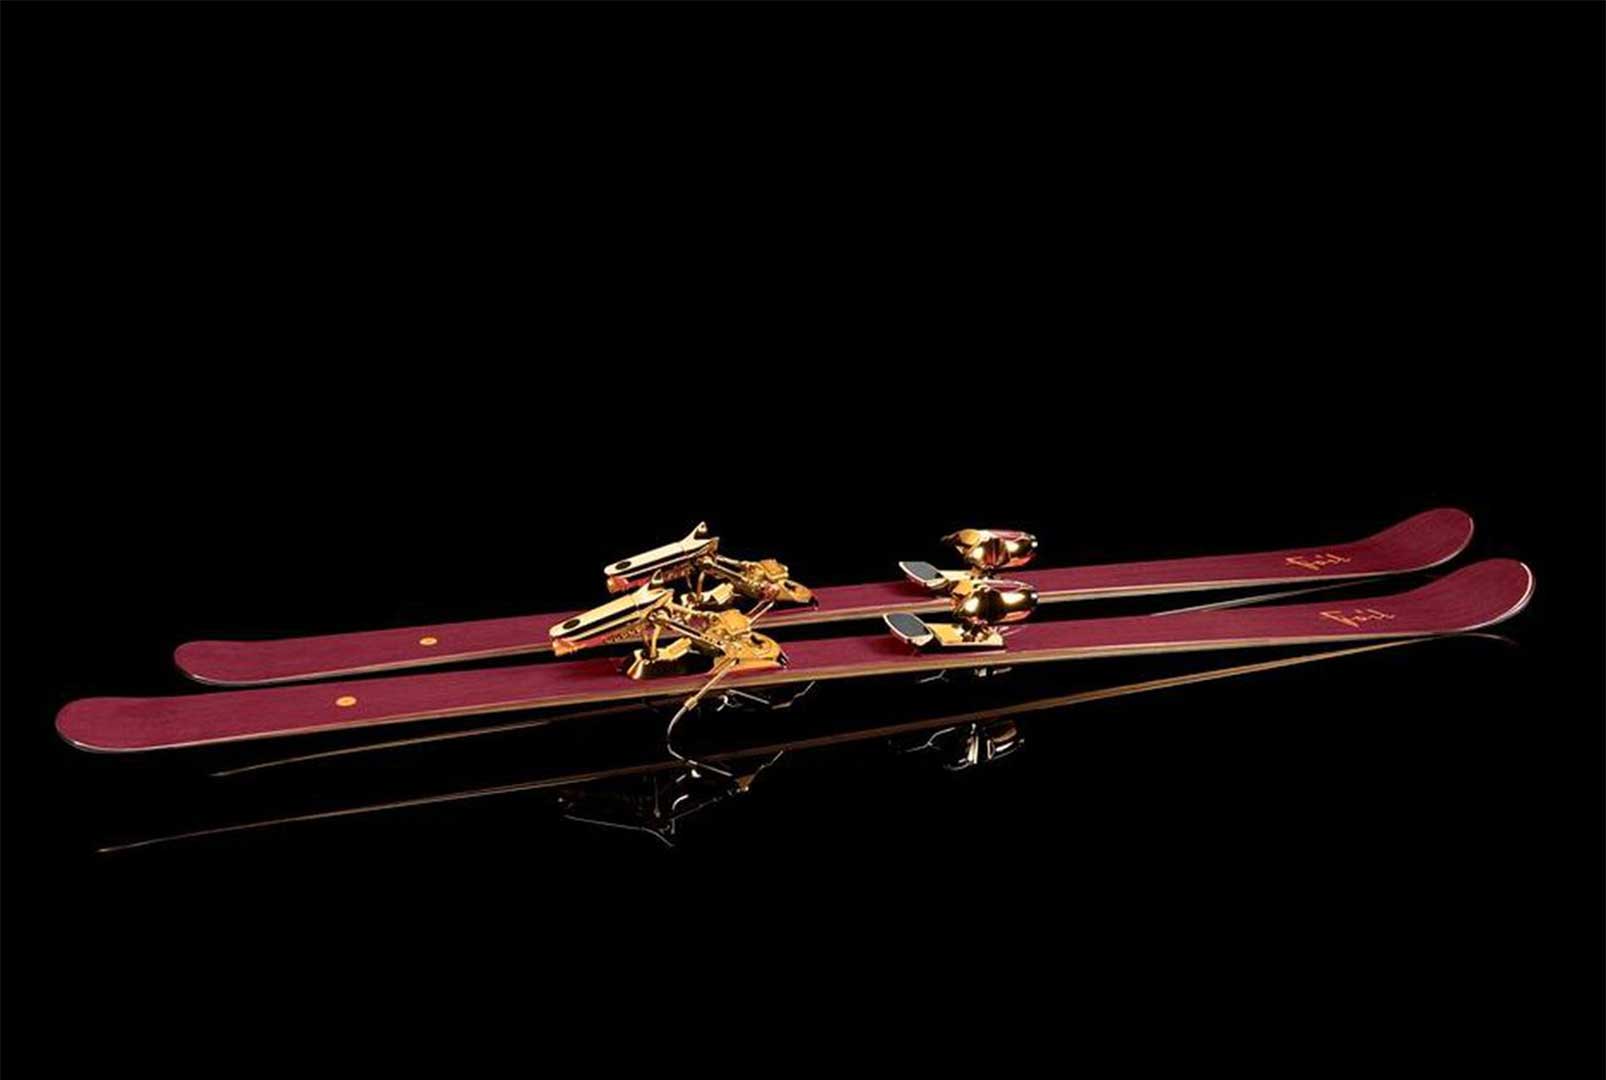 شرکتی به نام فویل اسکیز یک ست چوب اسکی فوق‌ لوکس به قیمت ۴۲ هزار دلار به افتخار جکی چان از جنس چوب آمارانتو ساخته است که توپر و ضد آب است.